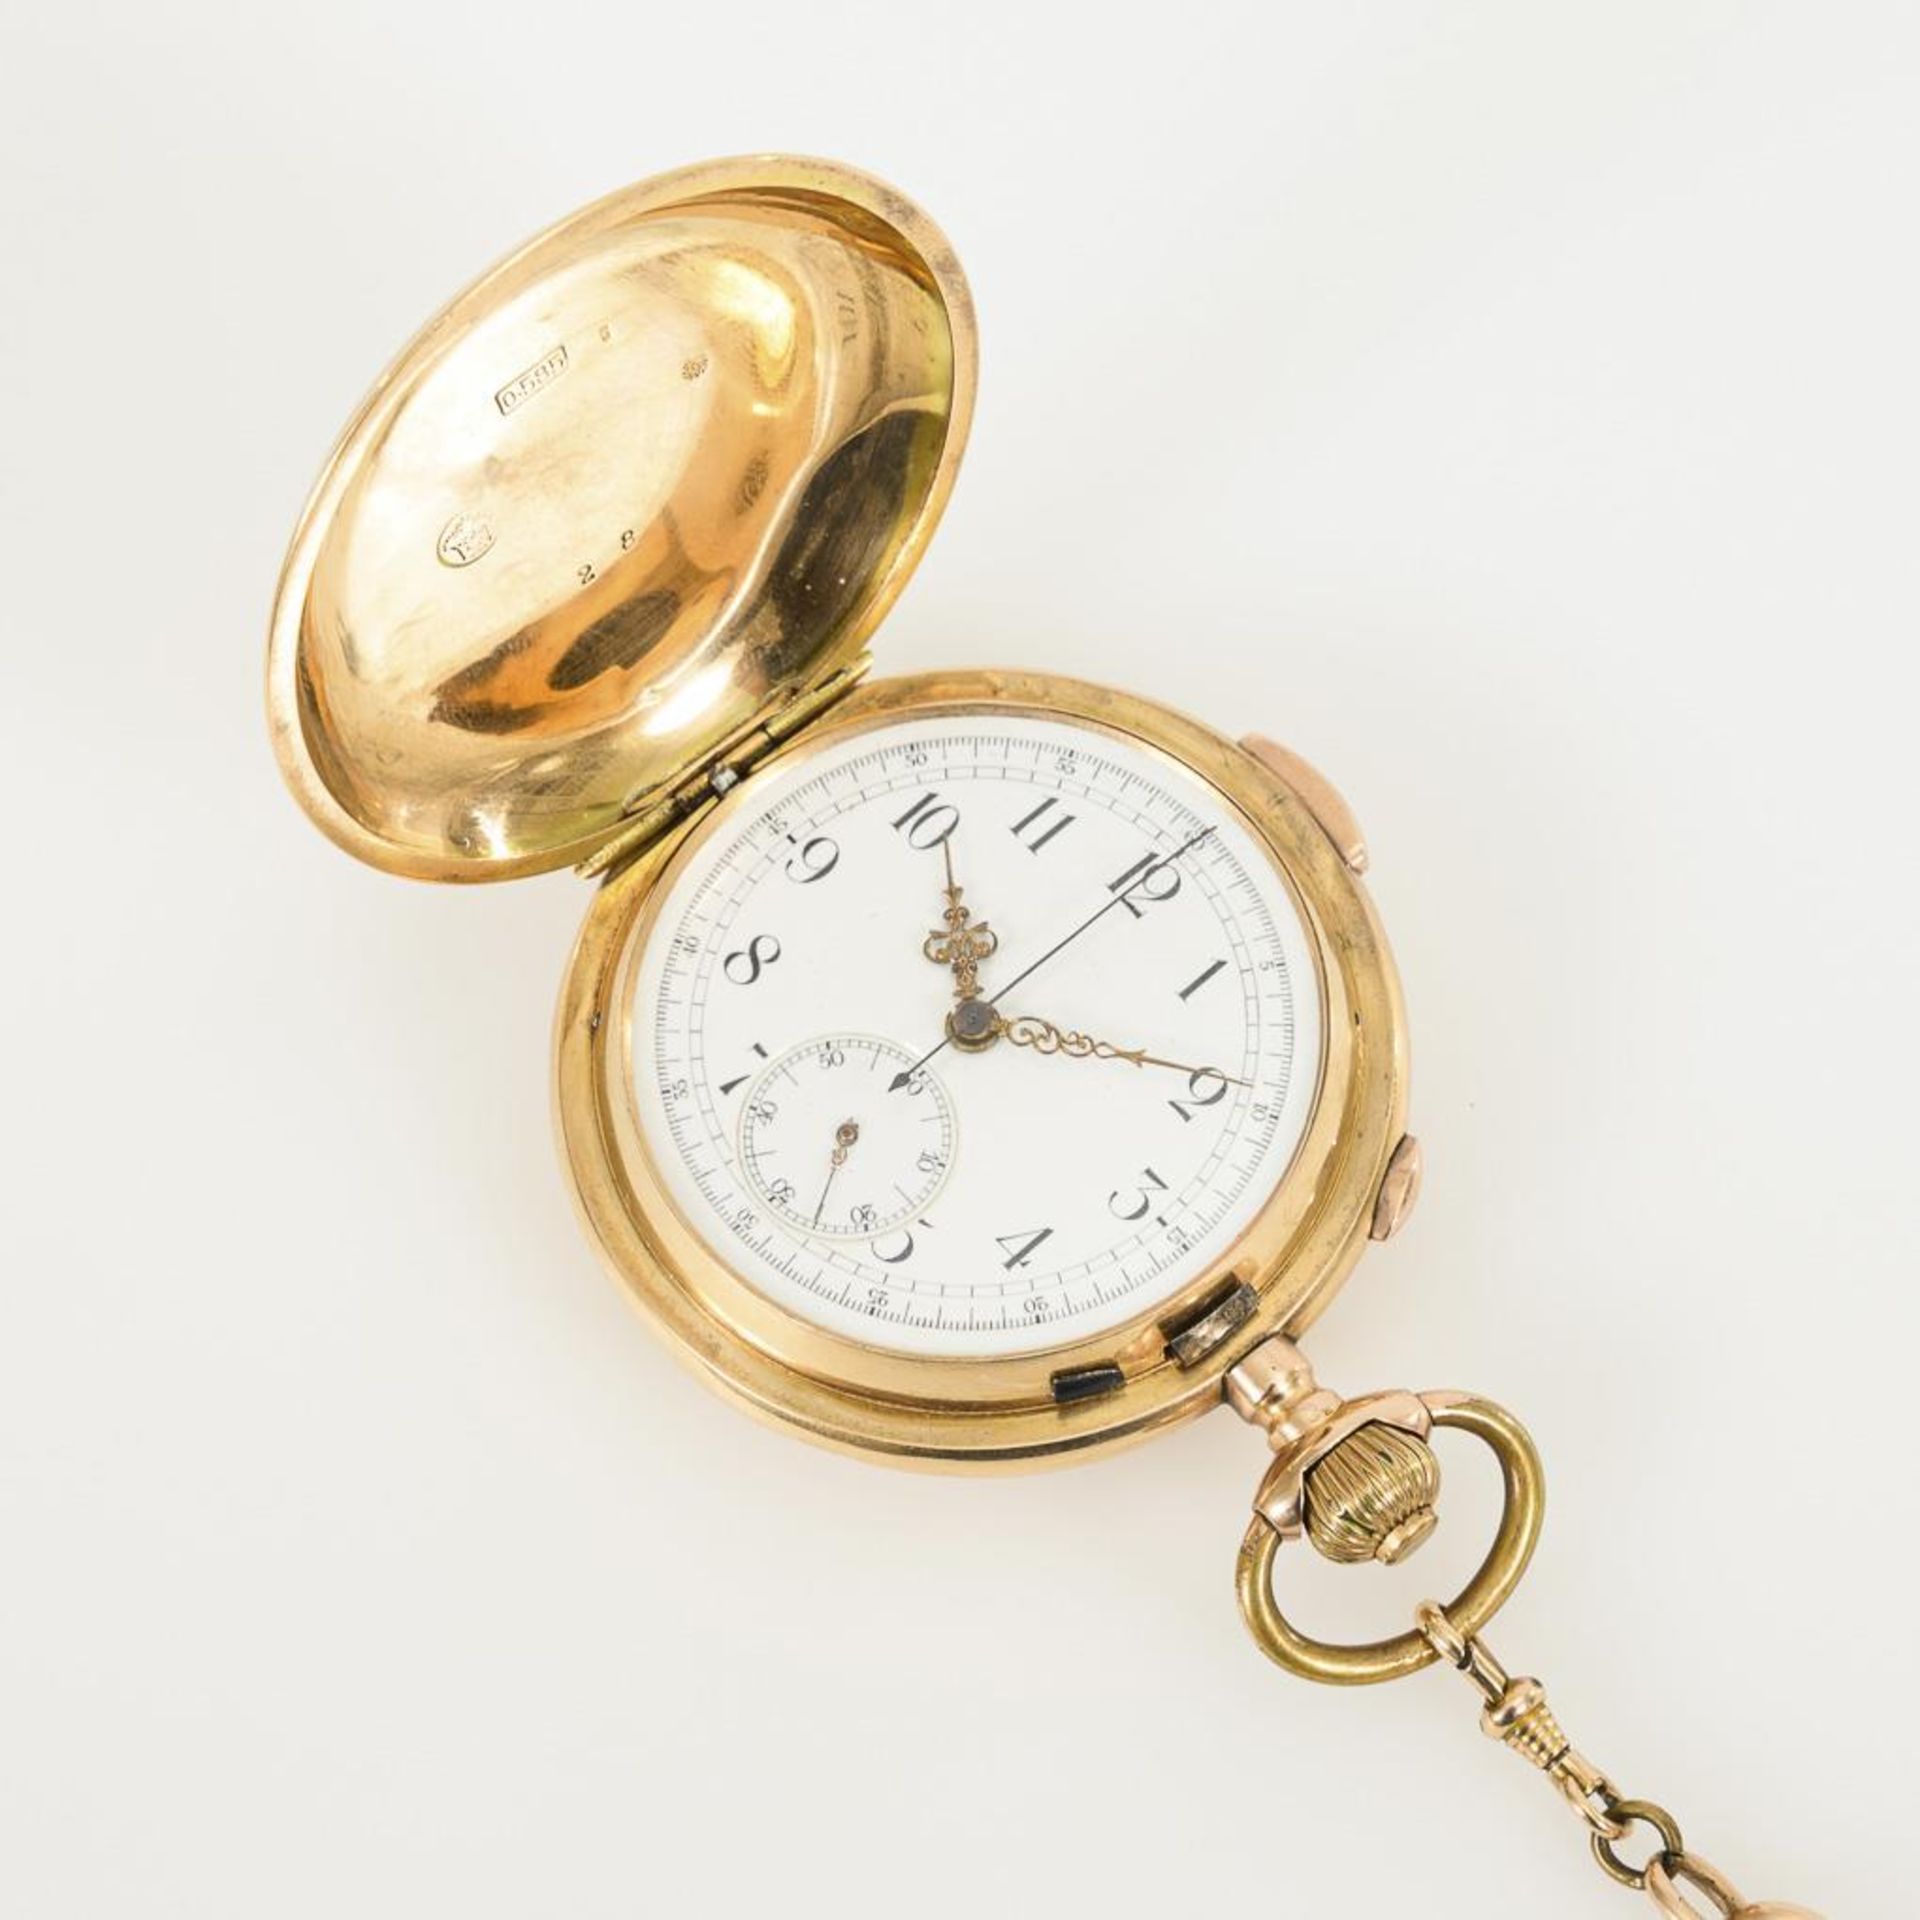 Goldene Savonnette mit Minutenrepetition und Chronograph an goldener Uhrenkette.